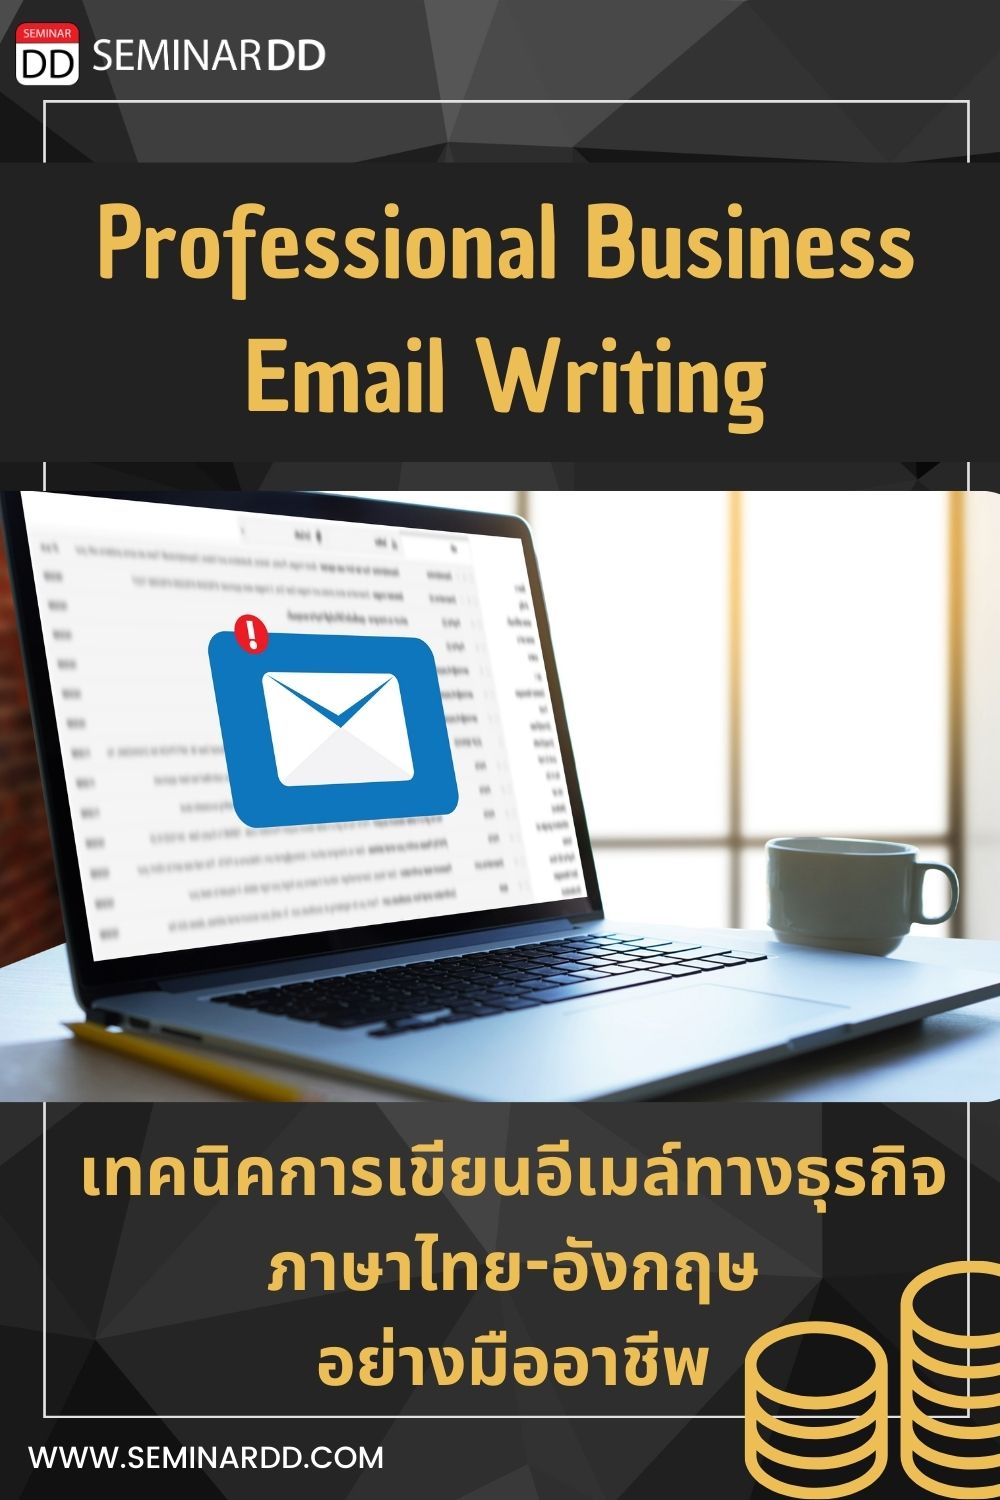 หลักสูตร เทคนิคการเขียนอีเมลทางธุรกิจภาษาไทย และภาษาอังกฤษอย่างมืออาชีพ Professional Business Email Writing